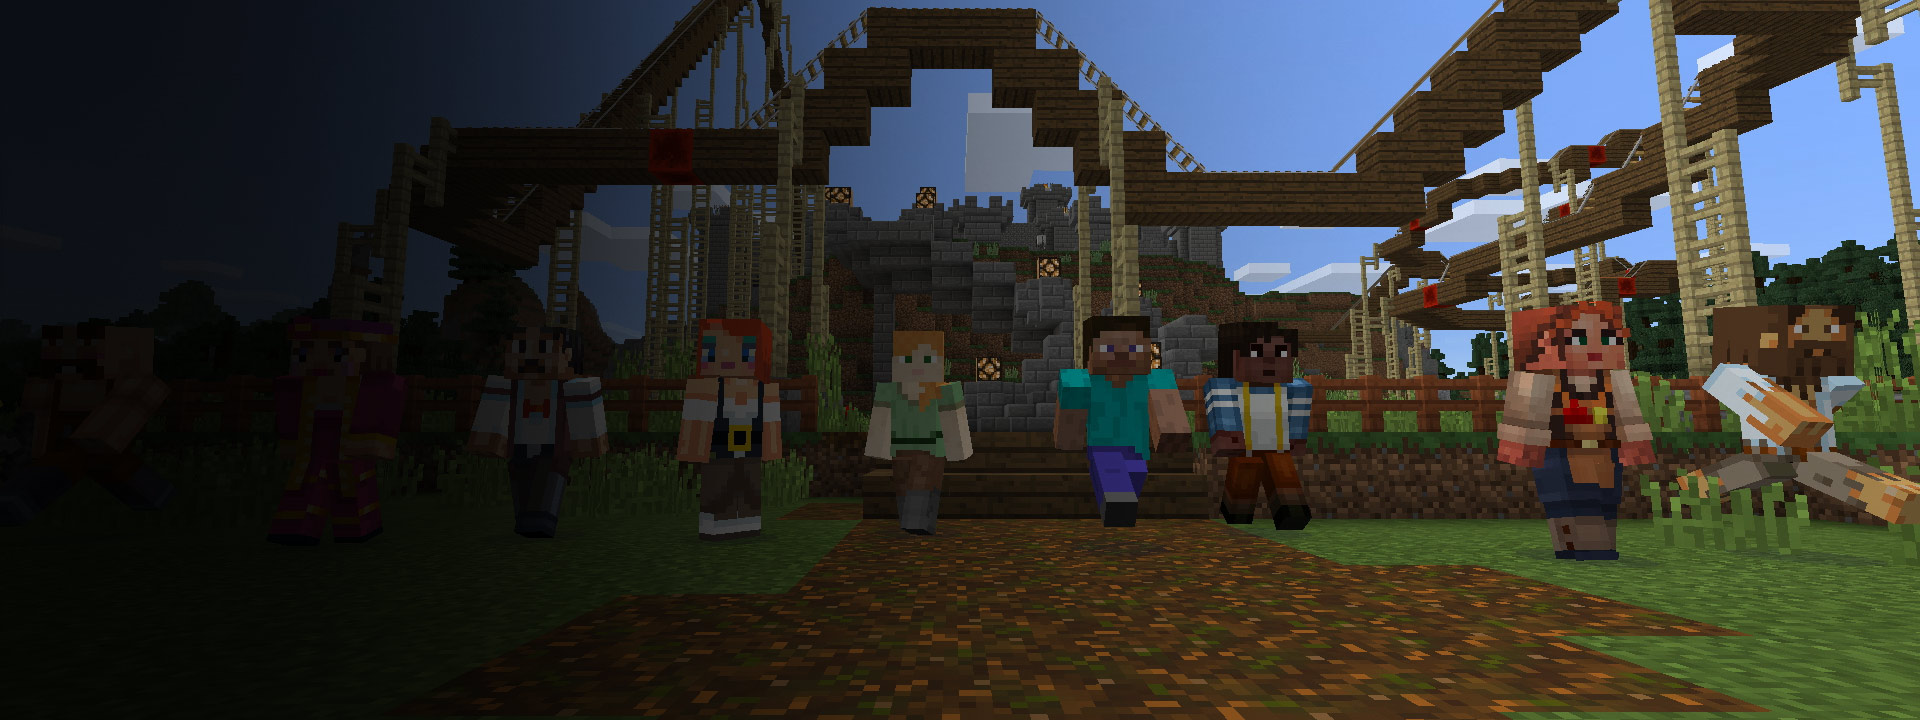 Jugadores de Minecraft que se reúnen para construir